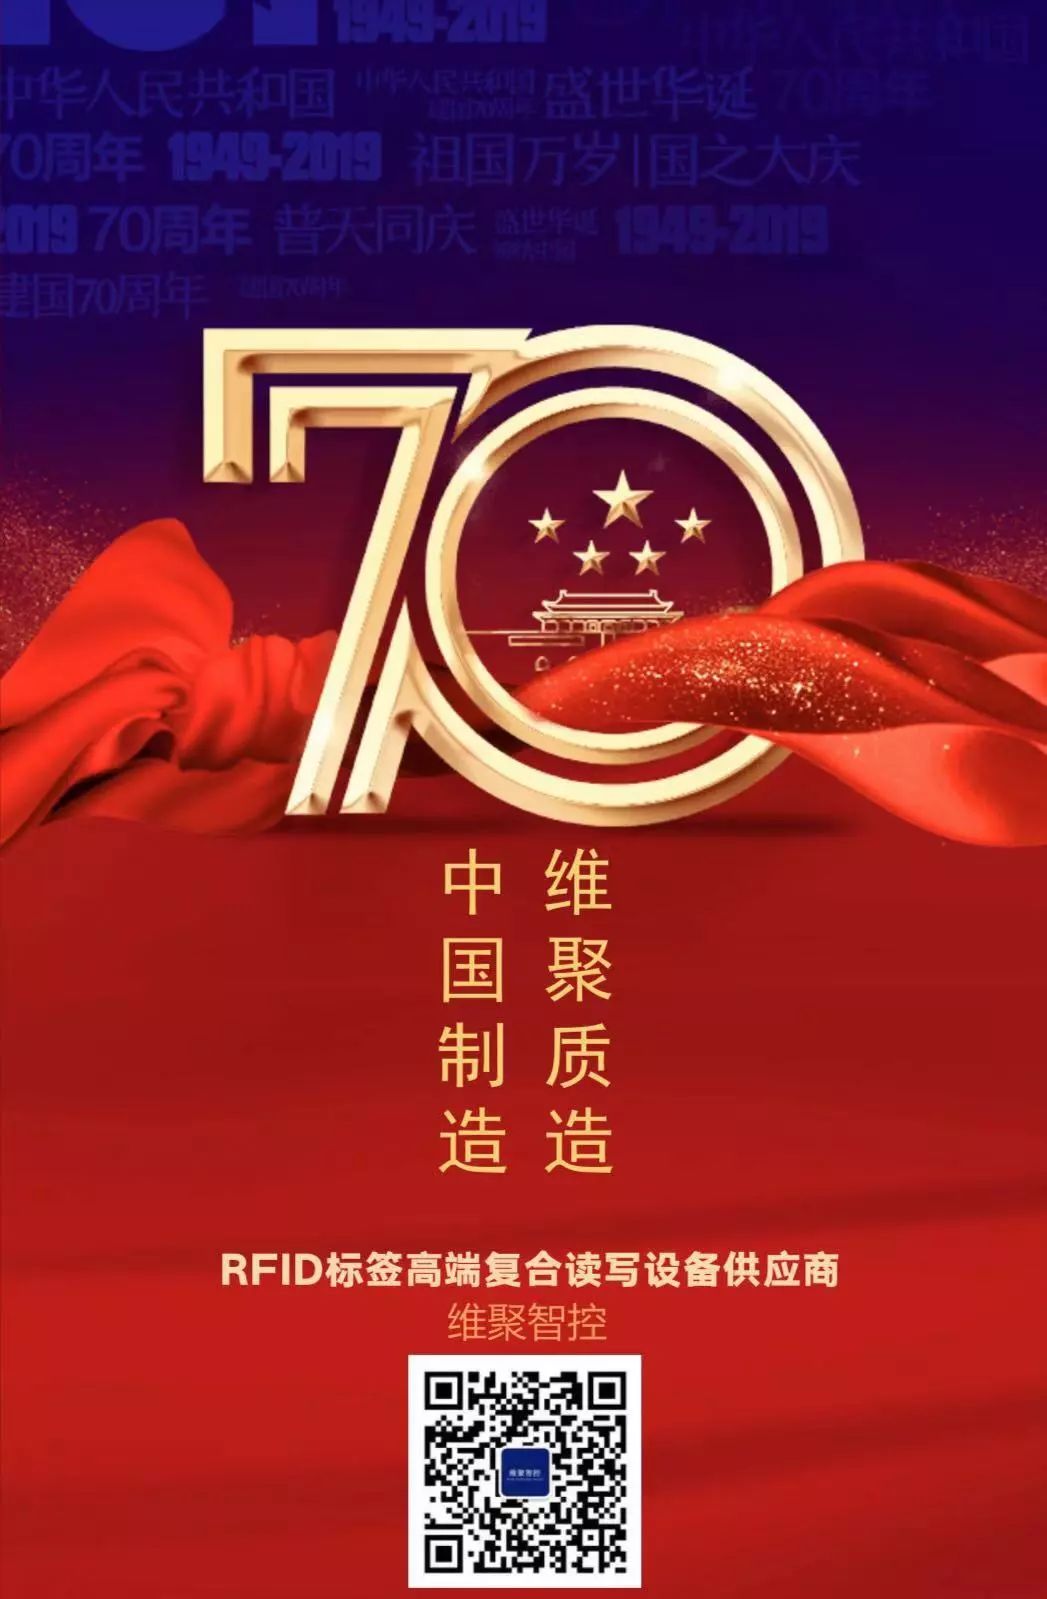 祝伟大的祖国繁荣昌盛，70周年生日快乐！